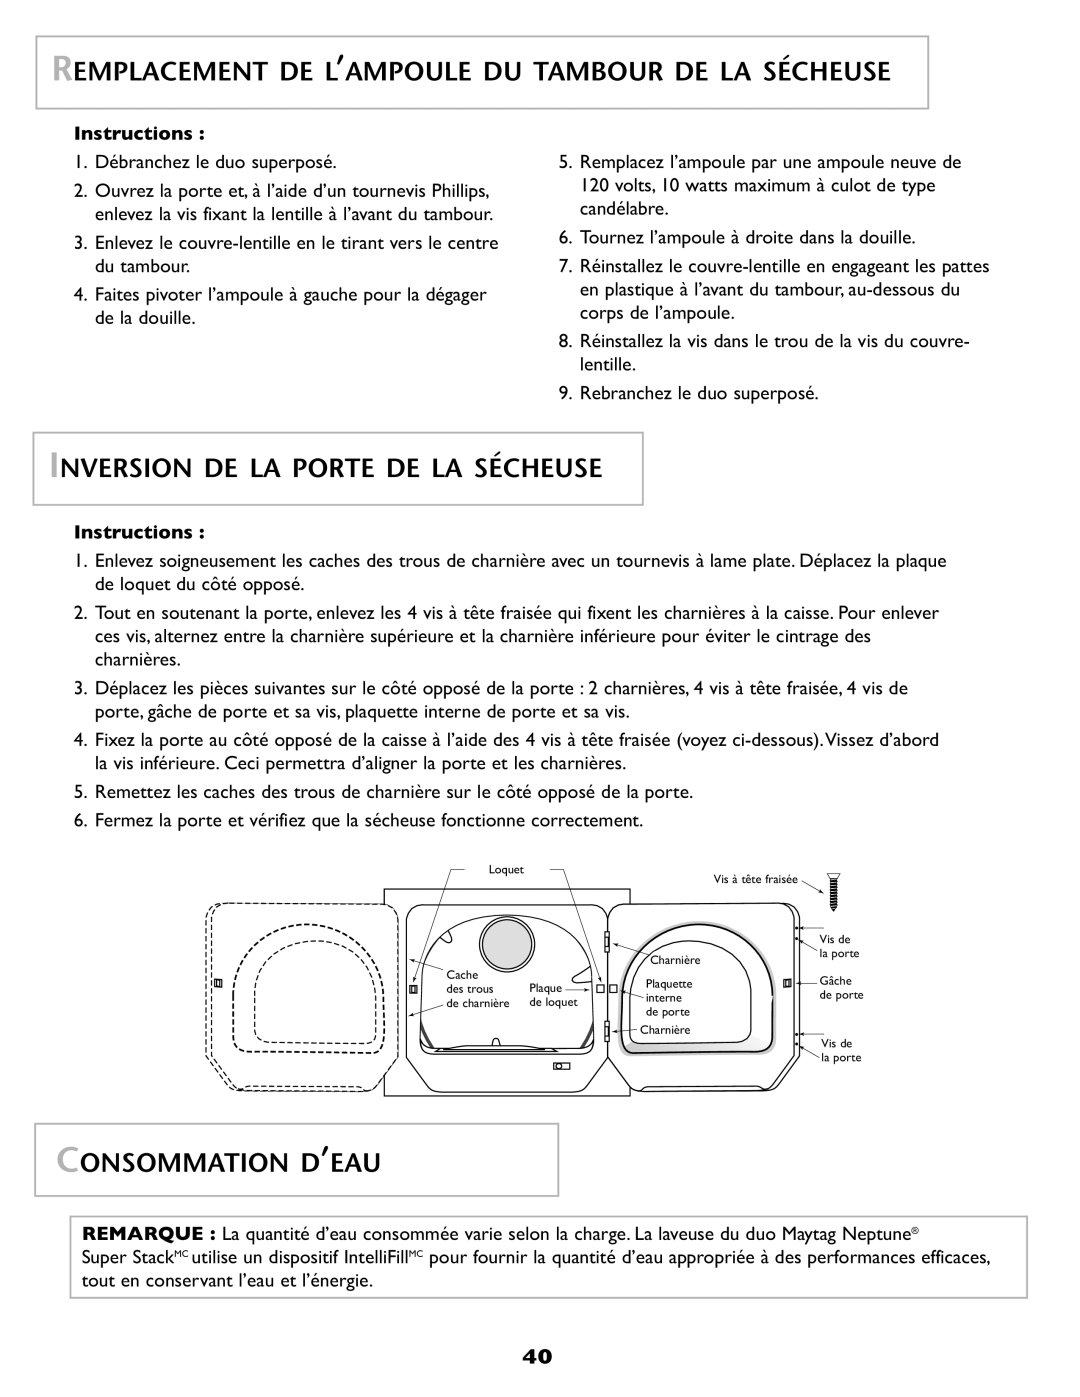 Maytag SL-3 Remplacement De L’Ampoule Du Tambour De La Sécheuse, Inversion De La Porte De La Sécheuse, Consommation D’Eau 